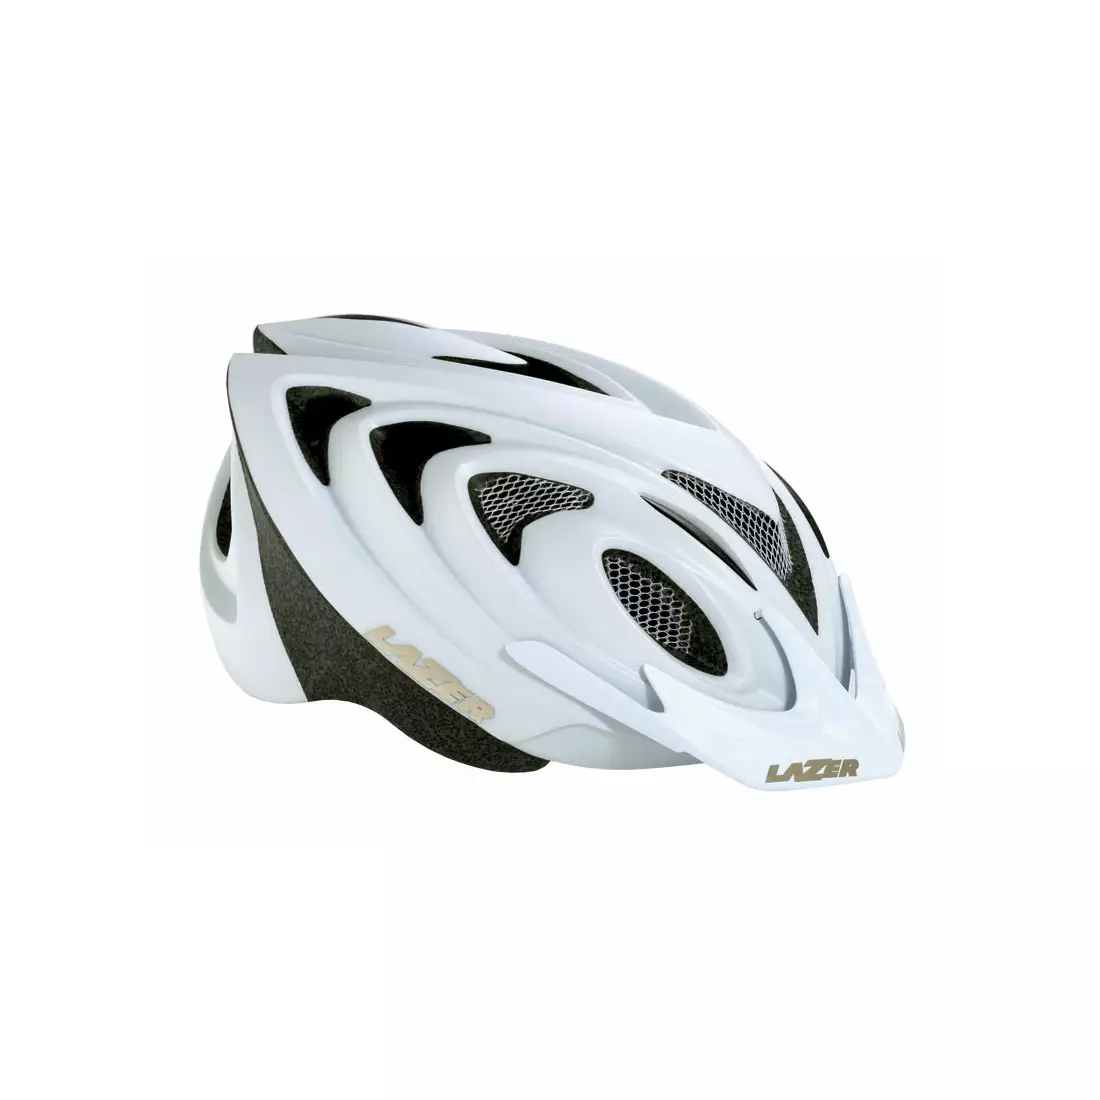 LAZER - Casca de bicicleta MTB 2X3M, culoare: alb mat